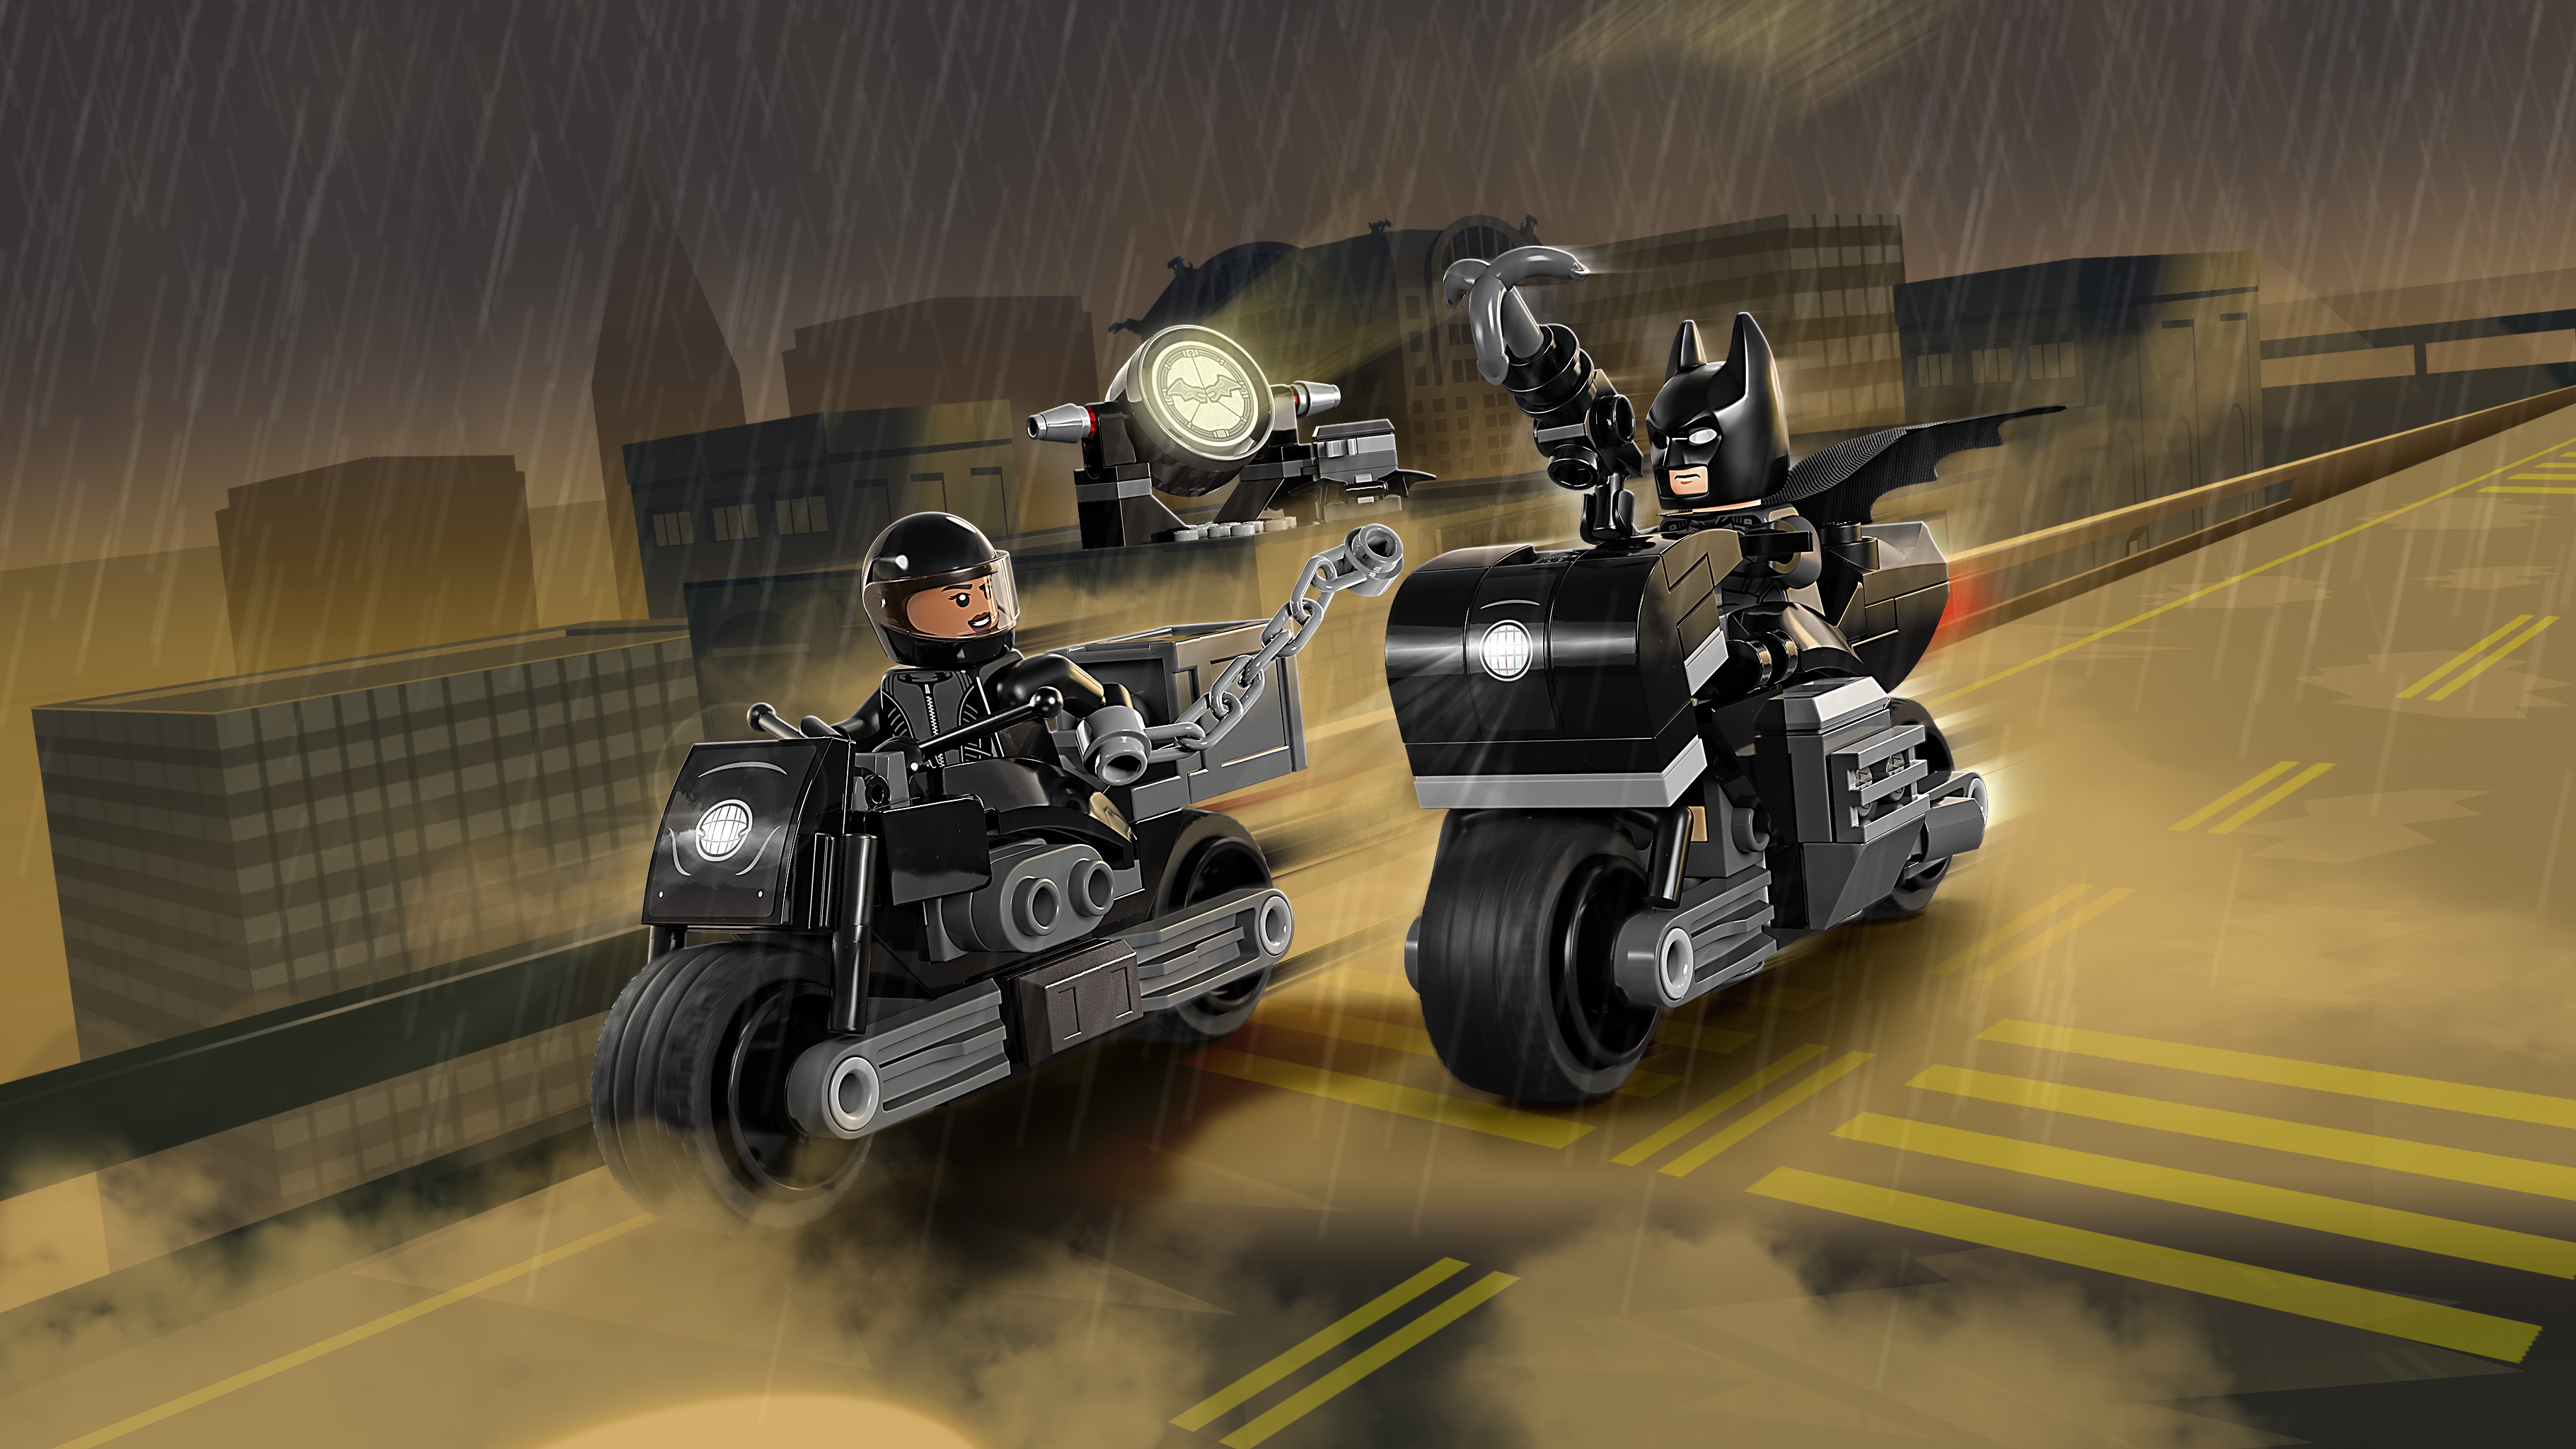 lego batman 2 harley quinn motorbike